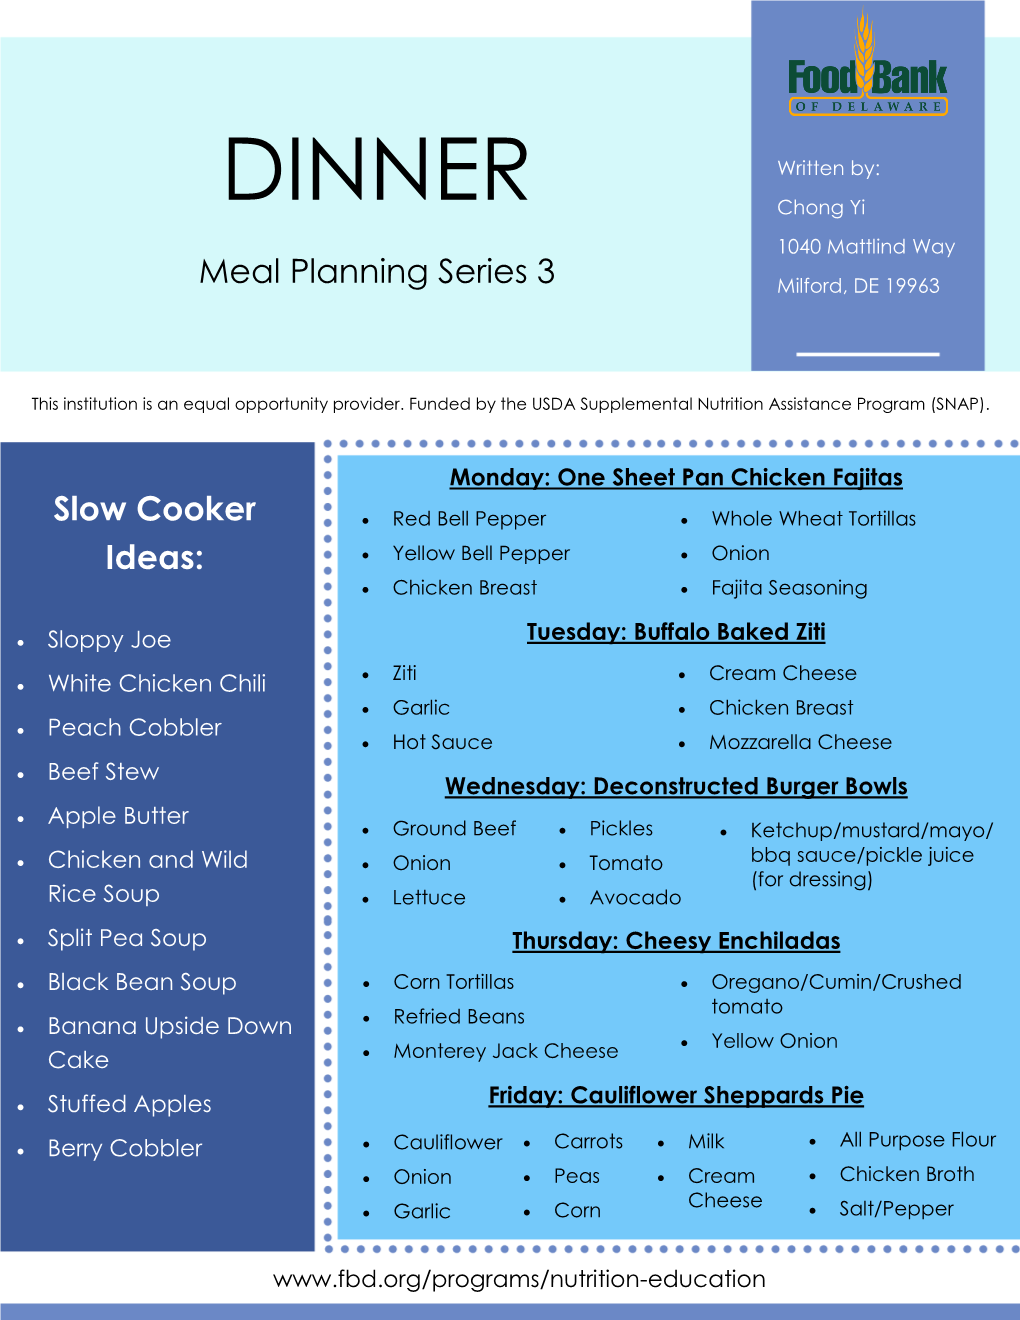 DINNER Written By: Chong Yi 1040 Mattlind Way Meal Planning Series 3 Milford, DE 19963